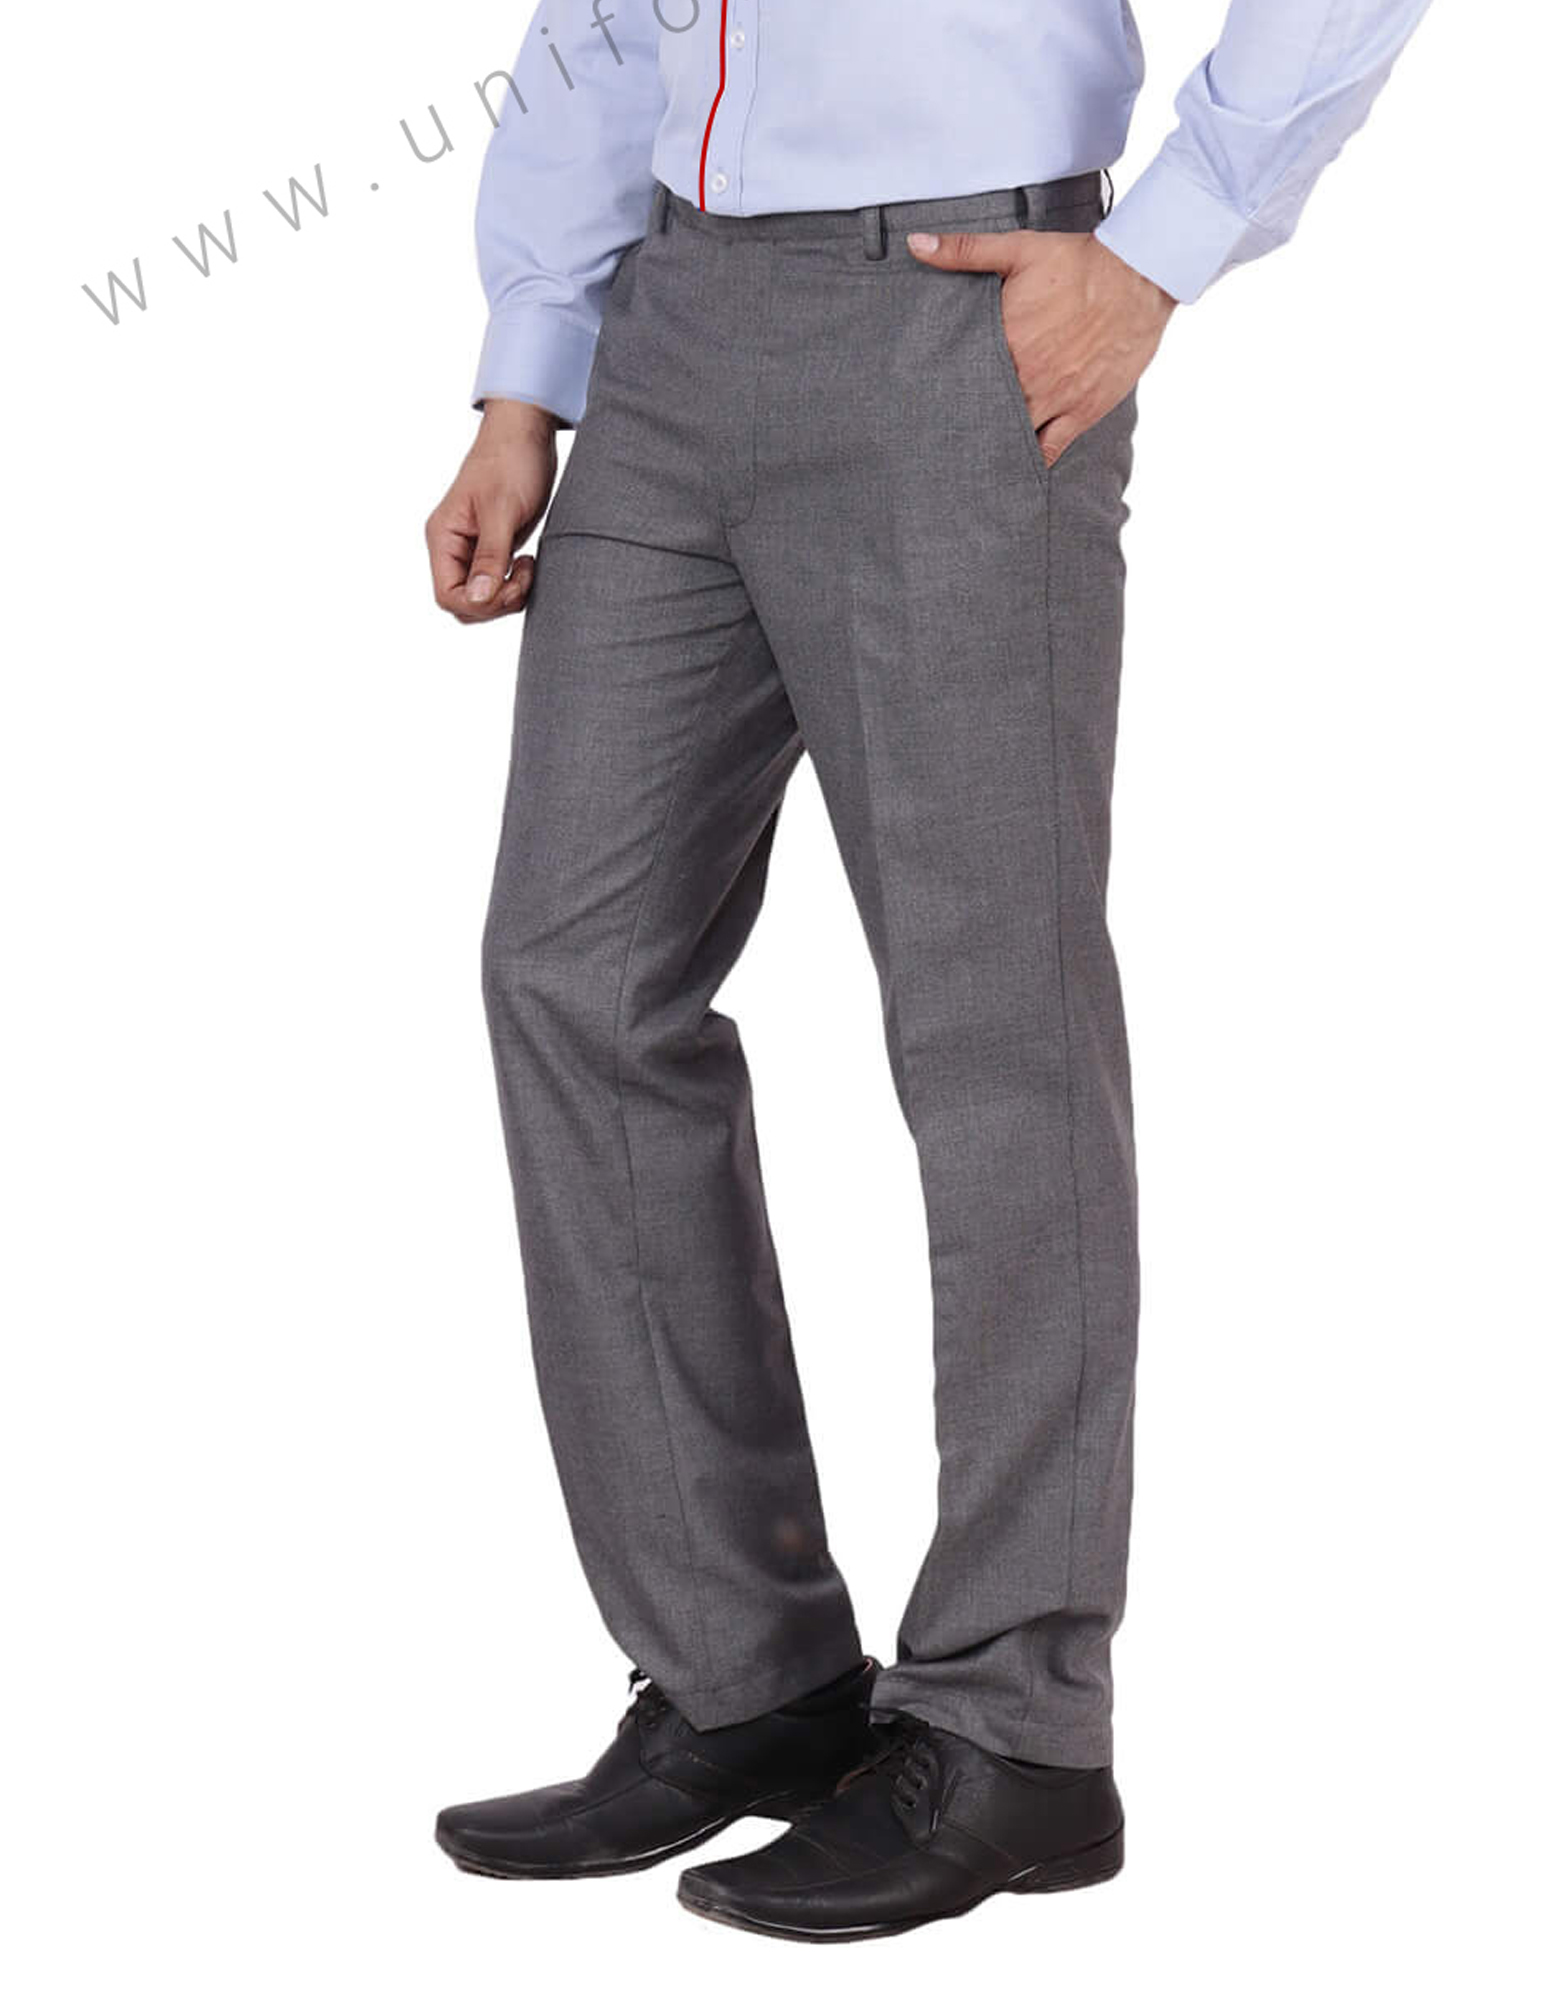 Buy Grey Trousers Mens & Trouser Pants For Men - Apella